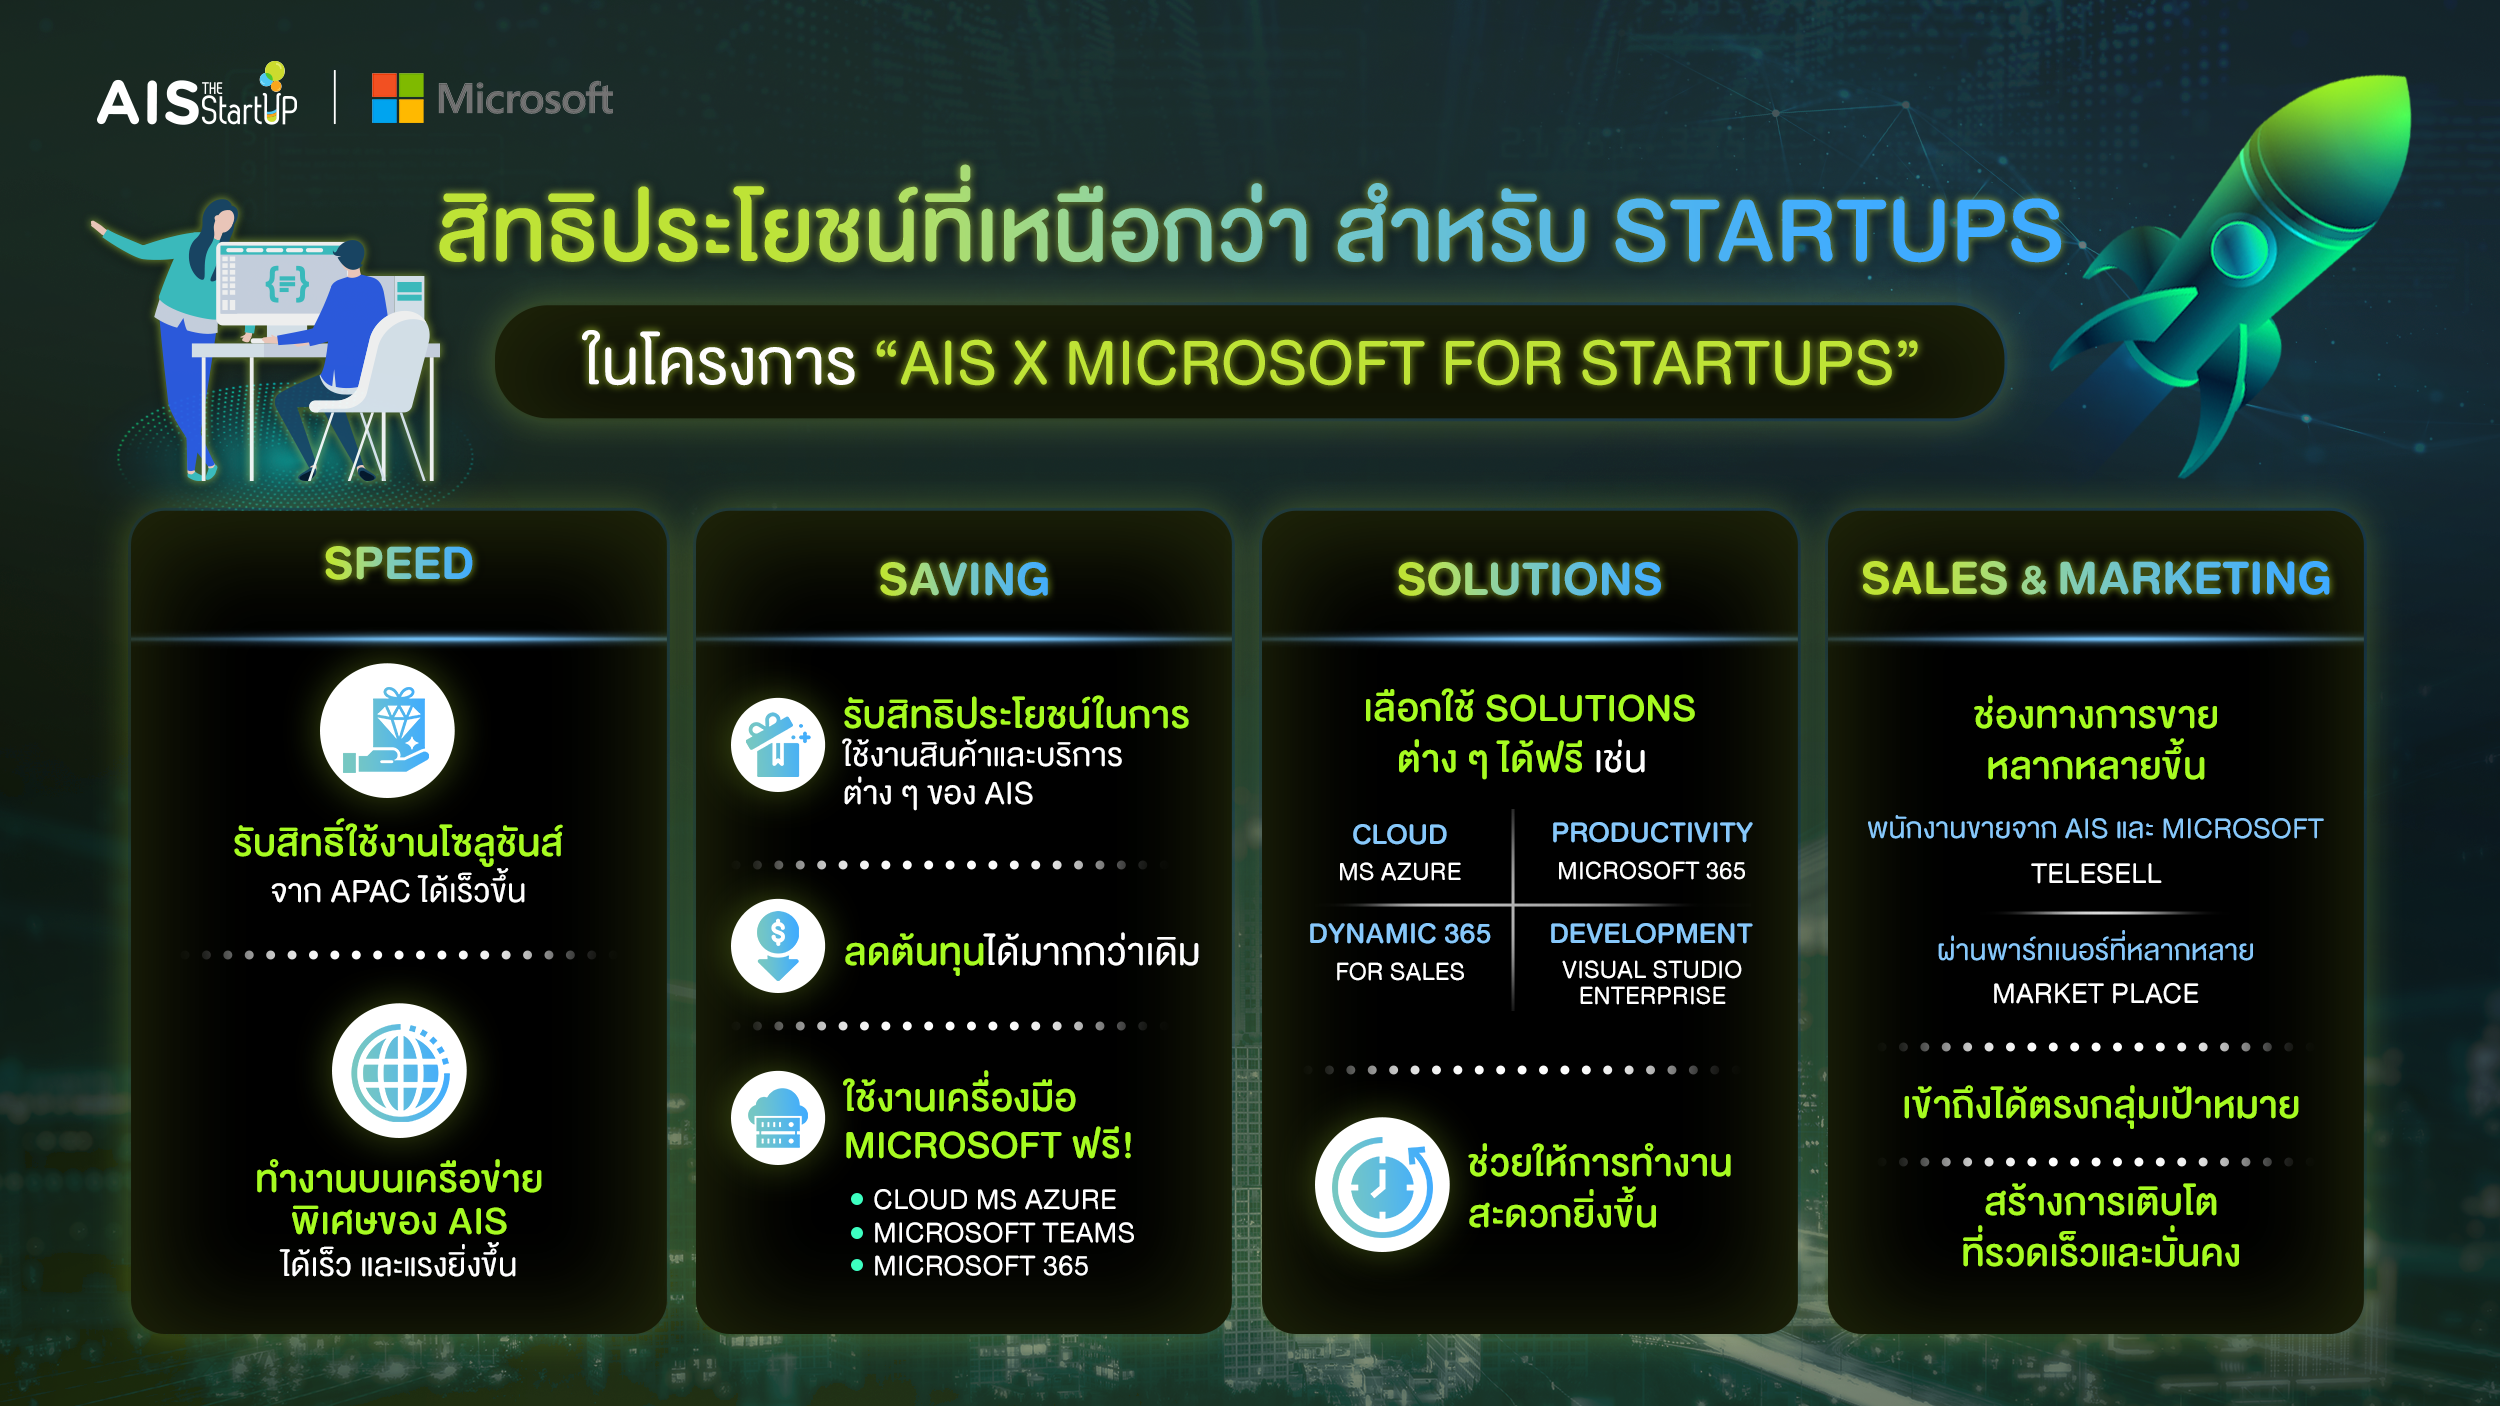 สิทธิประโยชน์ที่เหนือกว่าจากโครงการ AIS X Microsoft the Startups สำหรับ Startup Thailand